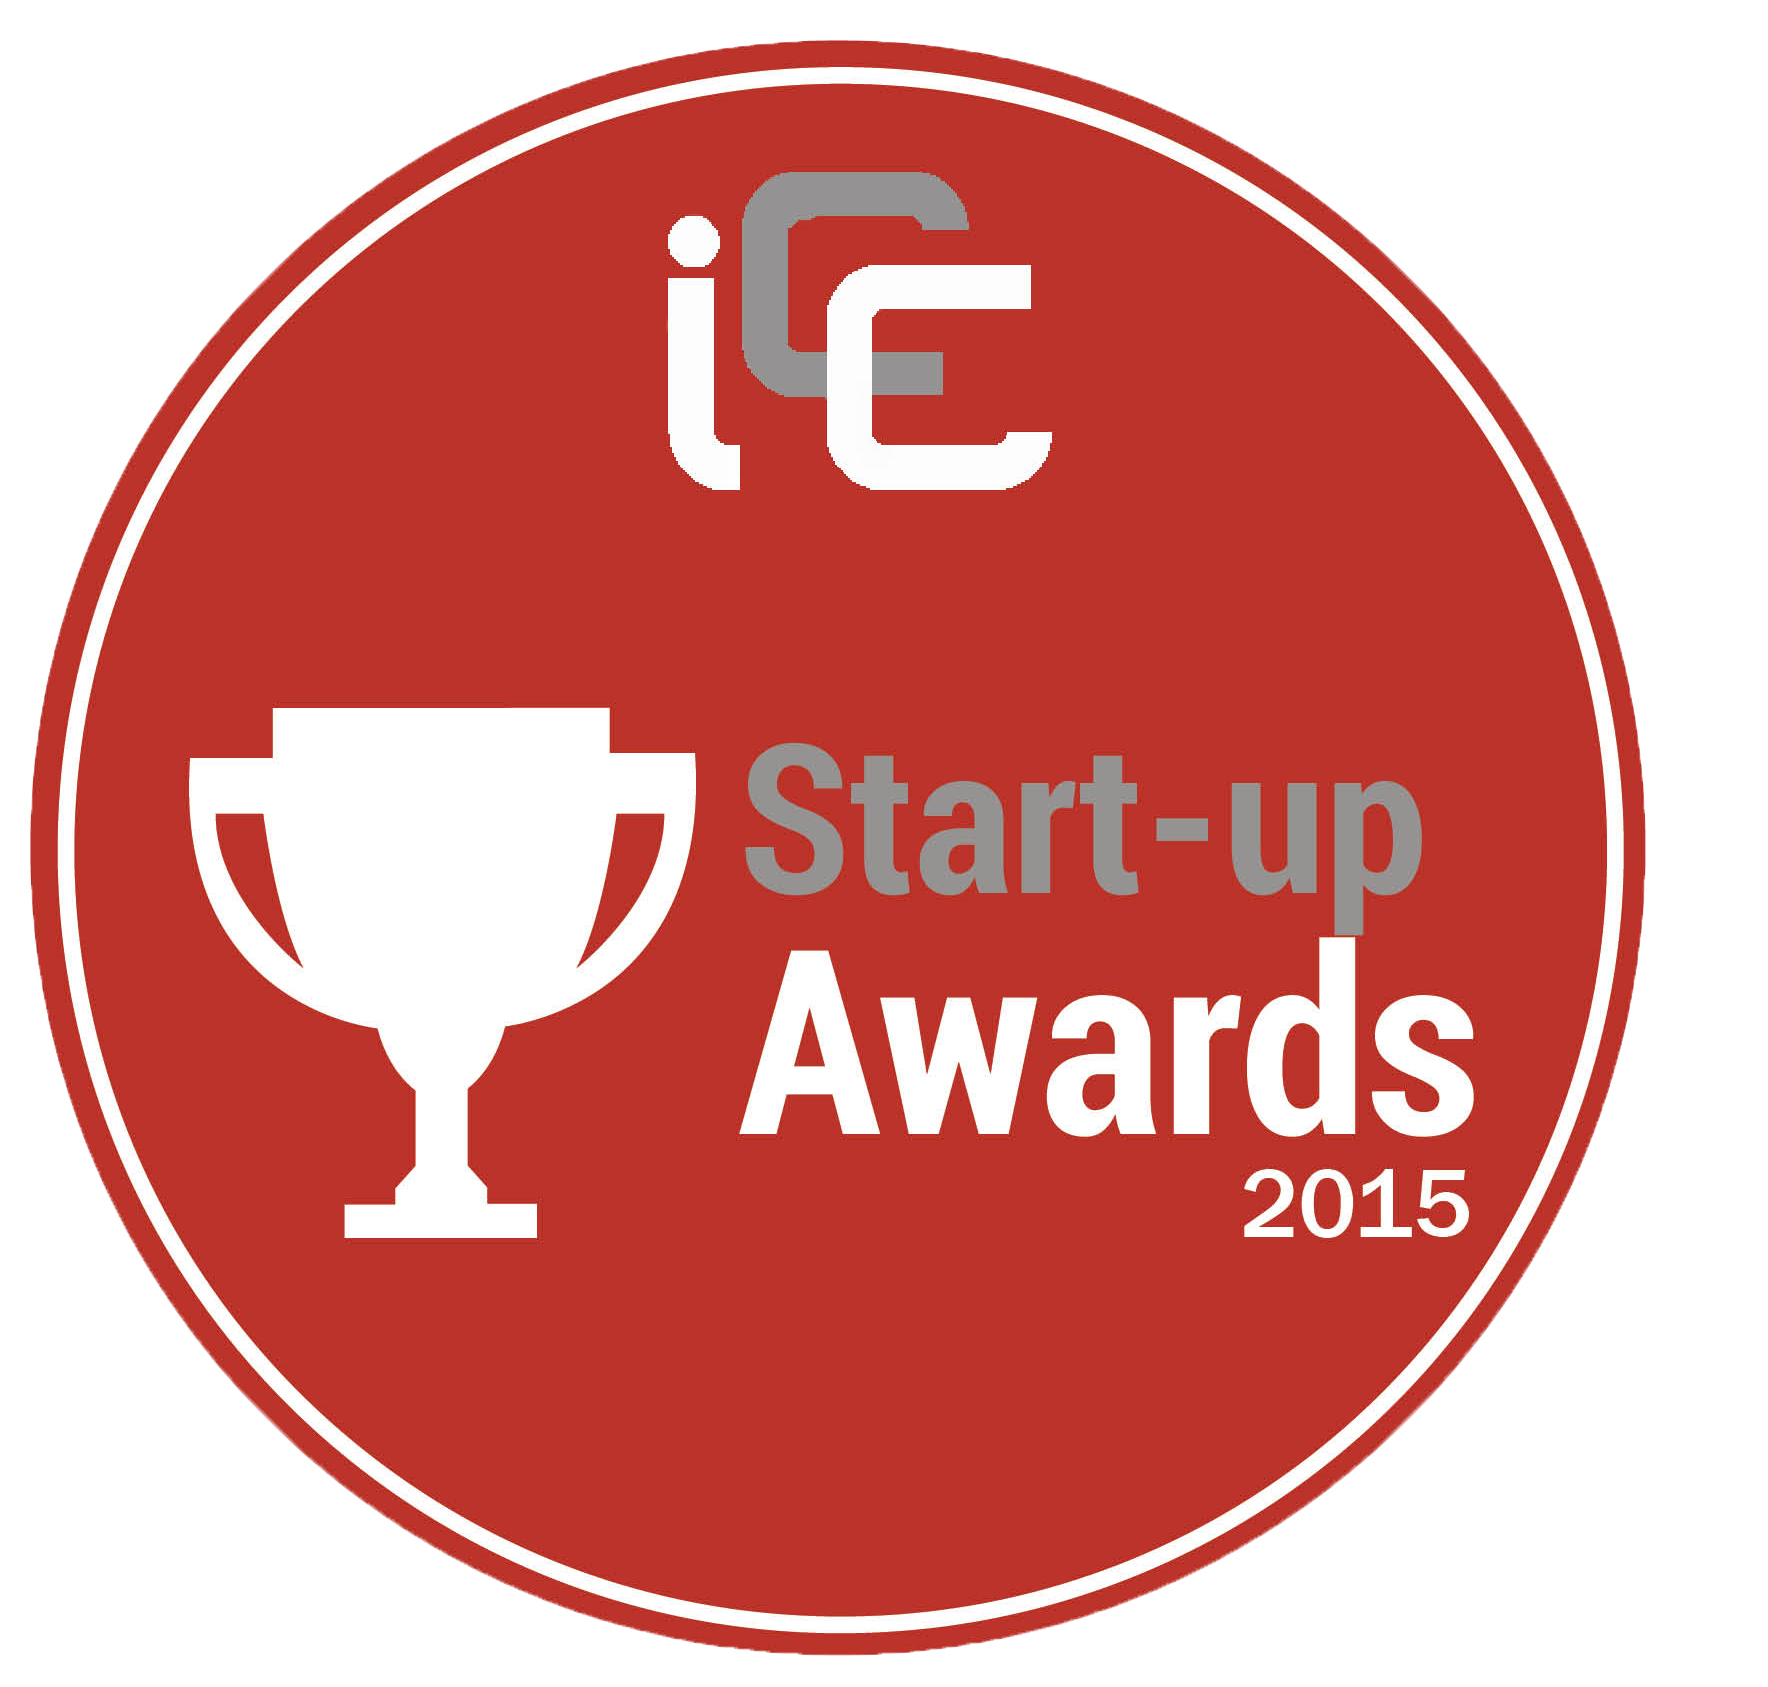 logo Awards - ICC Start-up Awards 2015 : la révolution du commerce connecté